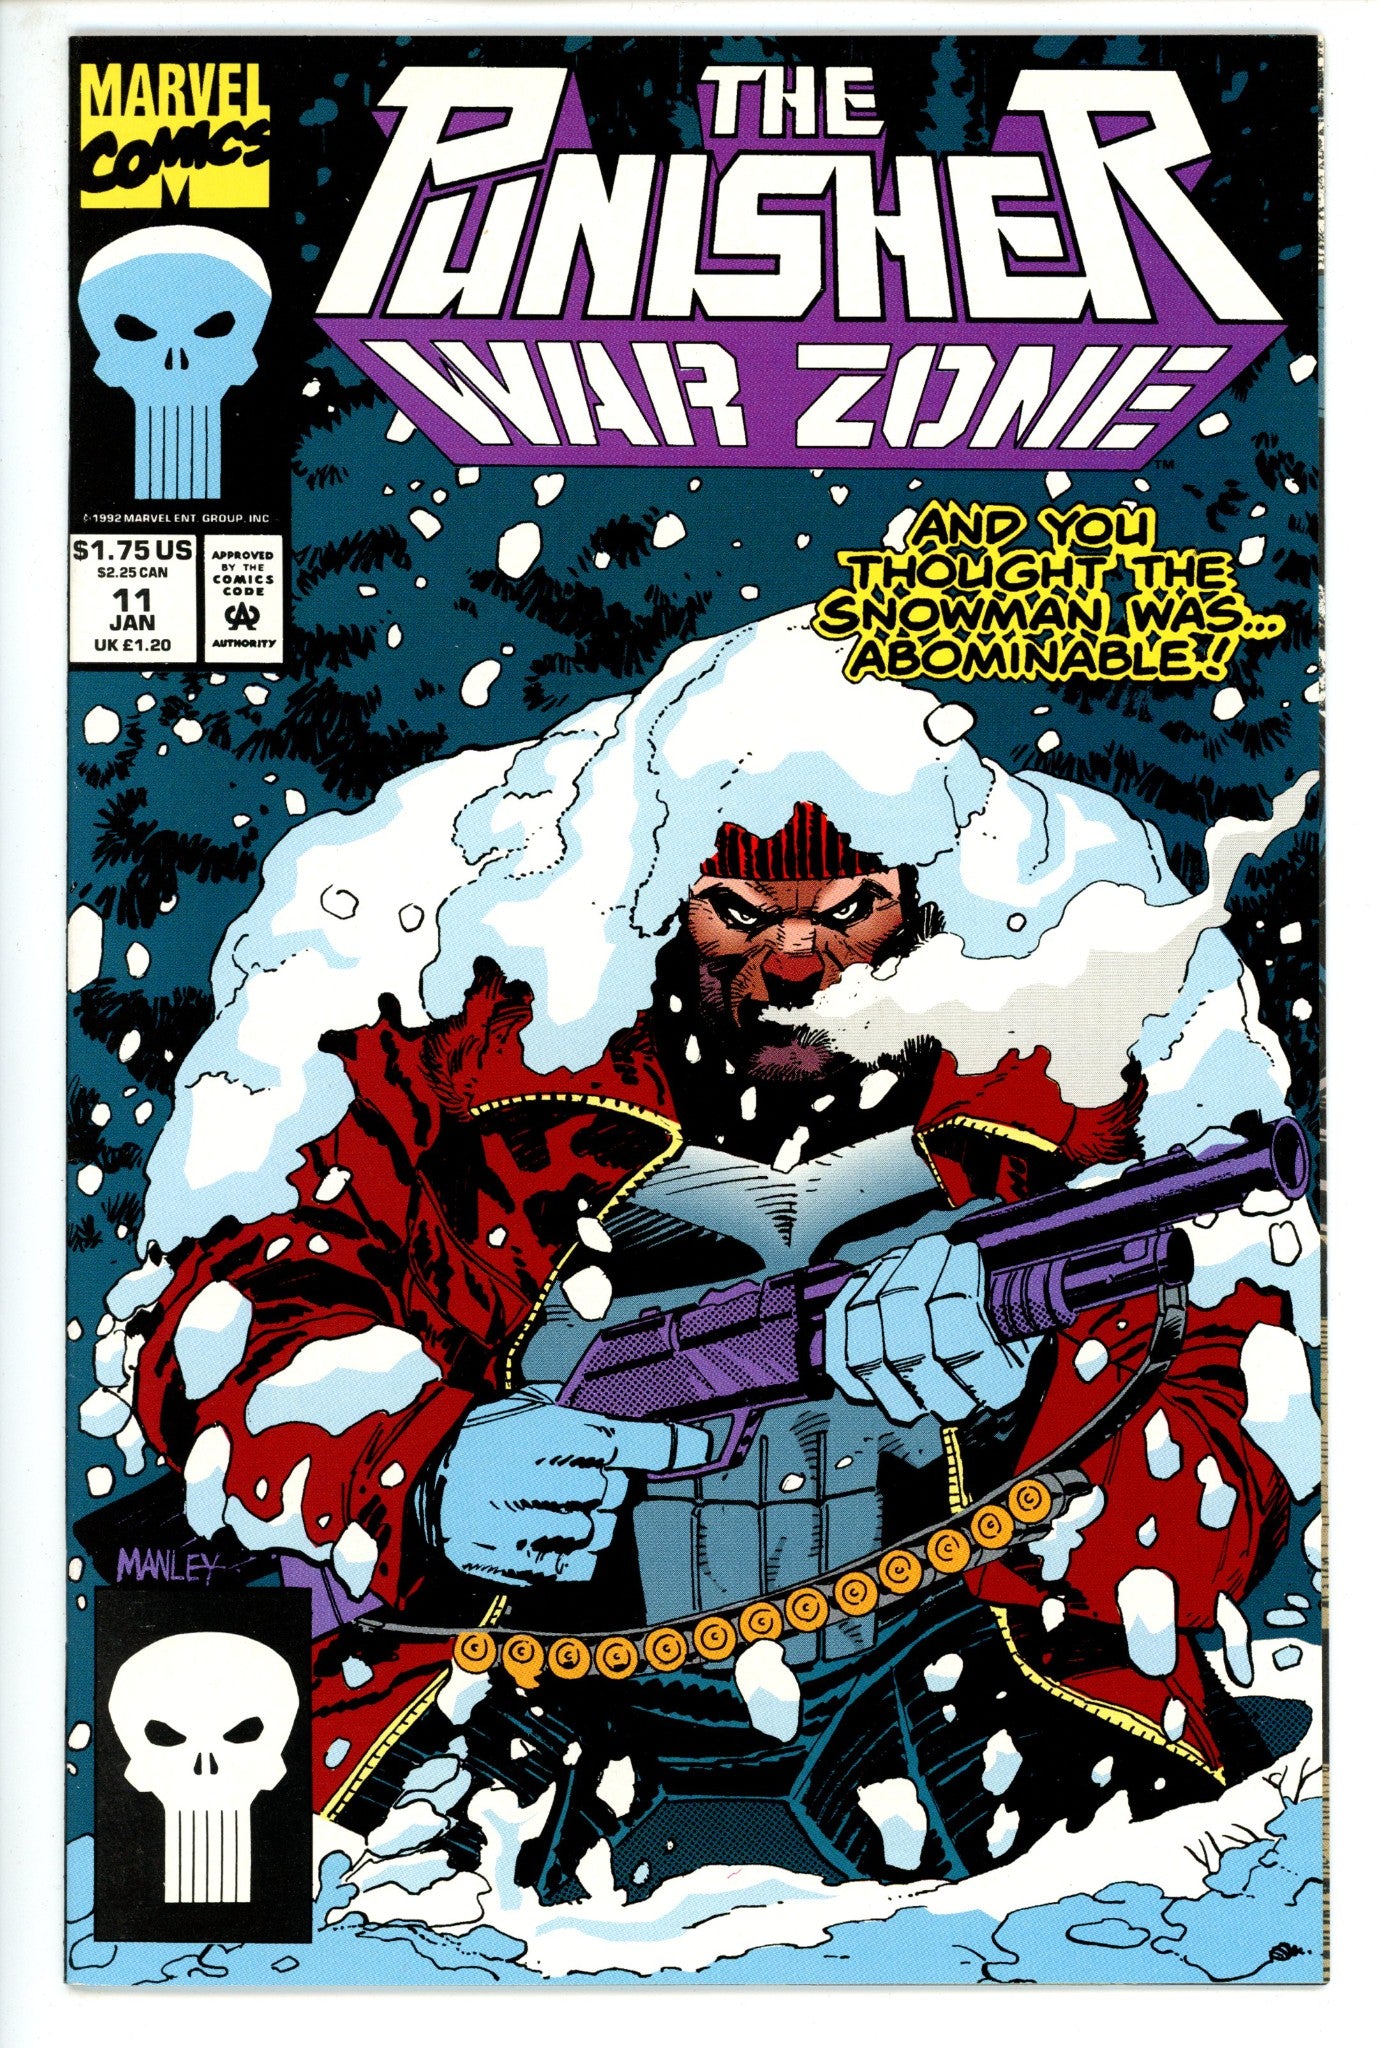 The Punisher: War Zone Vol 1 11